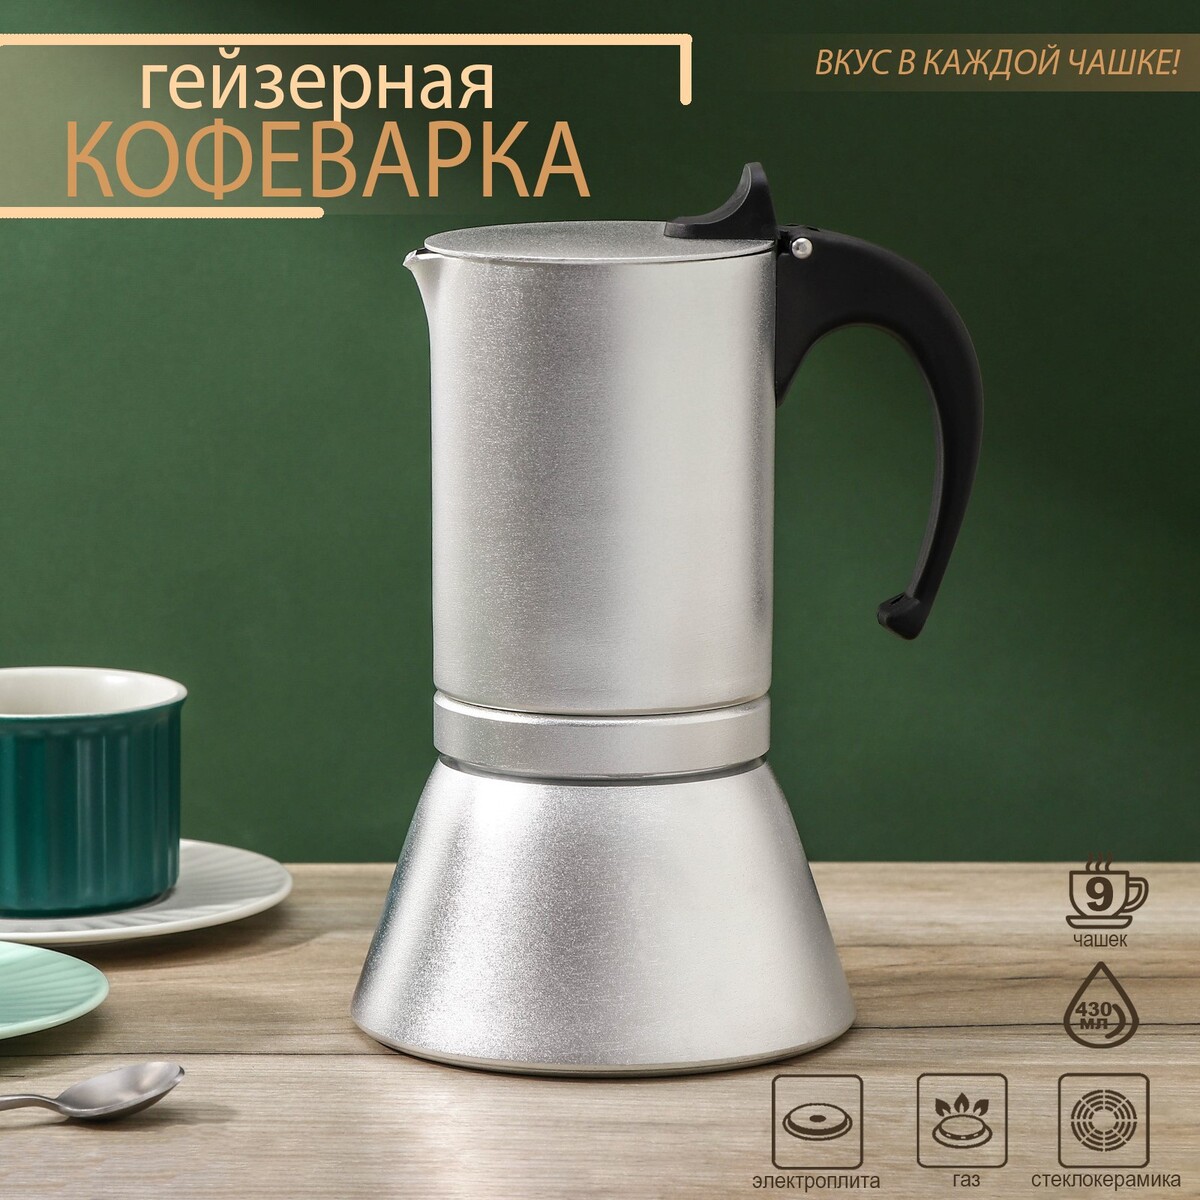 Кофеварка гейзерная magistro salem, на 9 чашек, 430 мл, индукция кофеварка гейзерная 330 мл vinzer latte nero 6 чашек